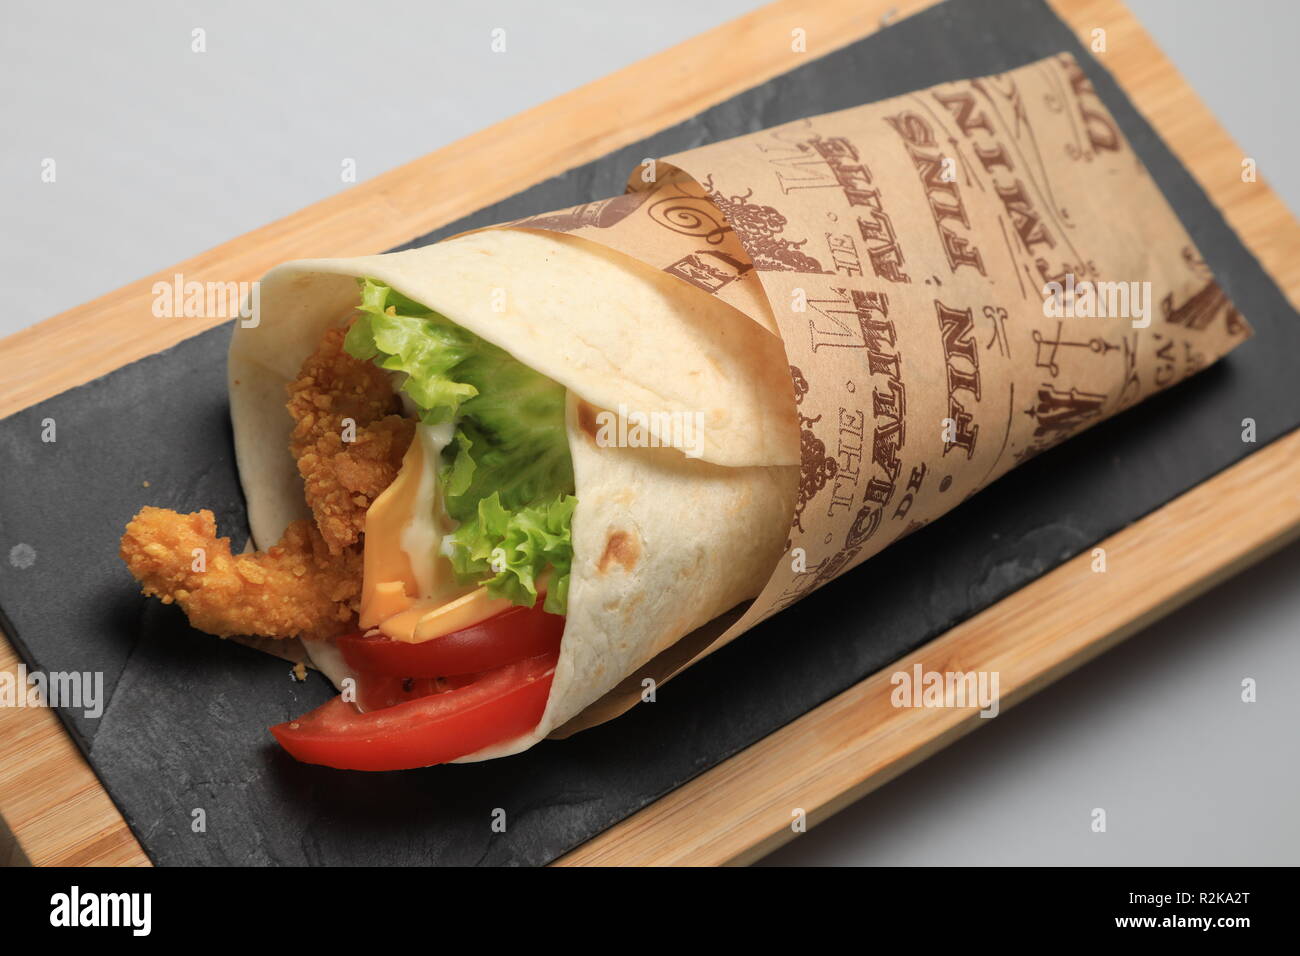 A shot of a tortilla sandwich, closeup Stock Photo